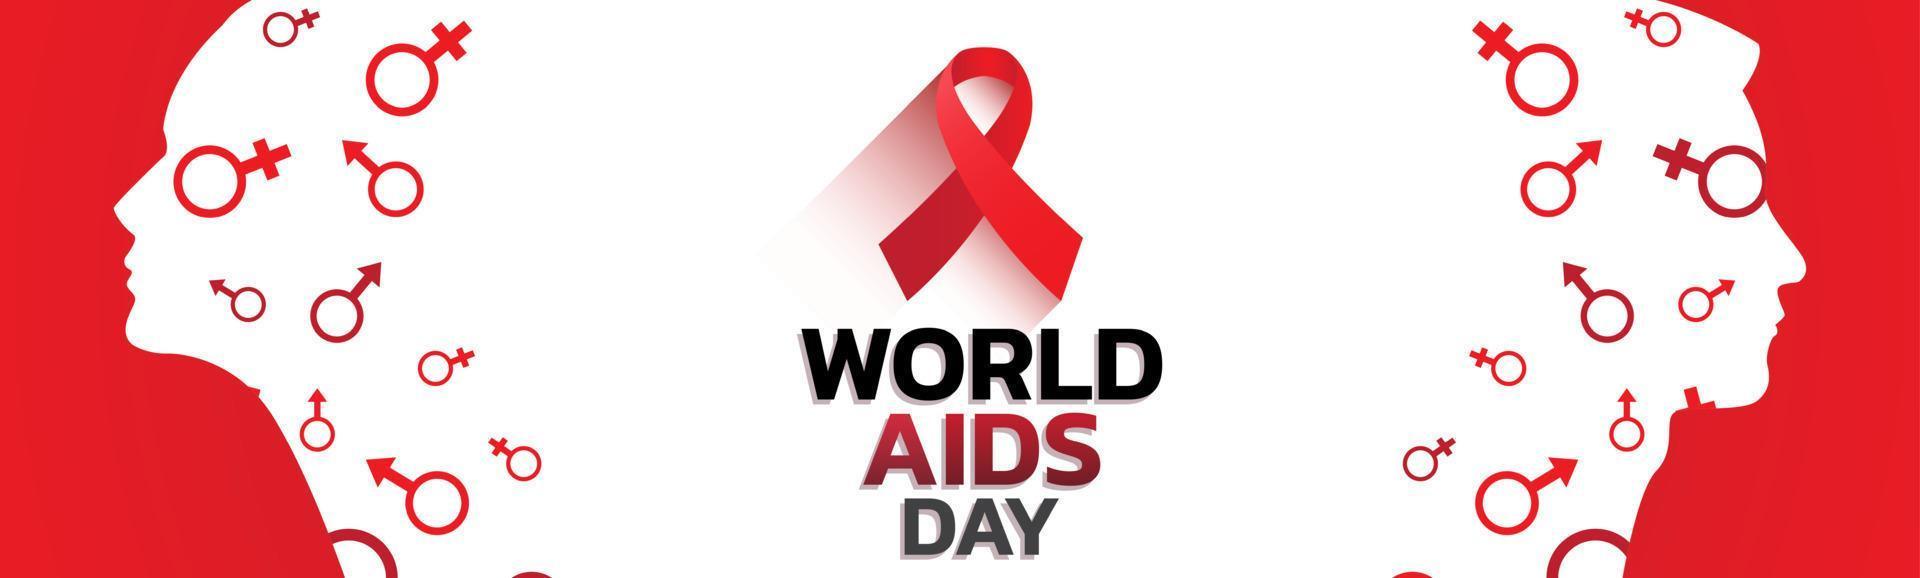 illustration de fond de bannière de la journée mondiale du sida. vecteur